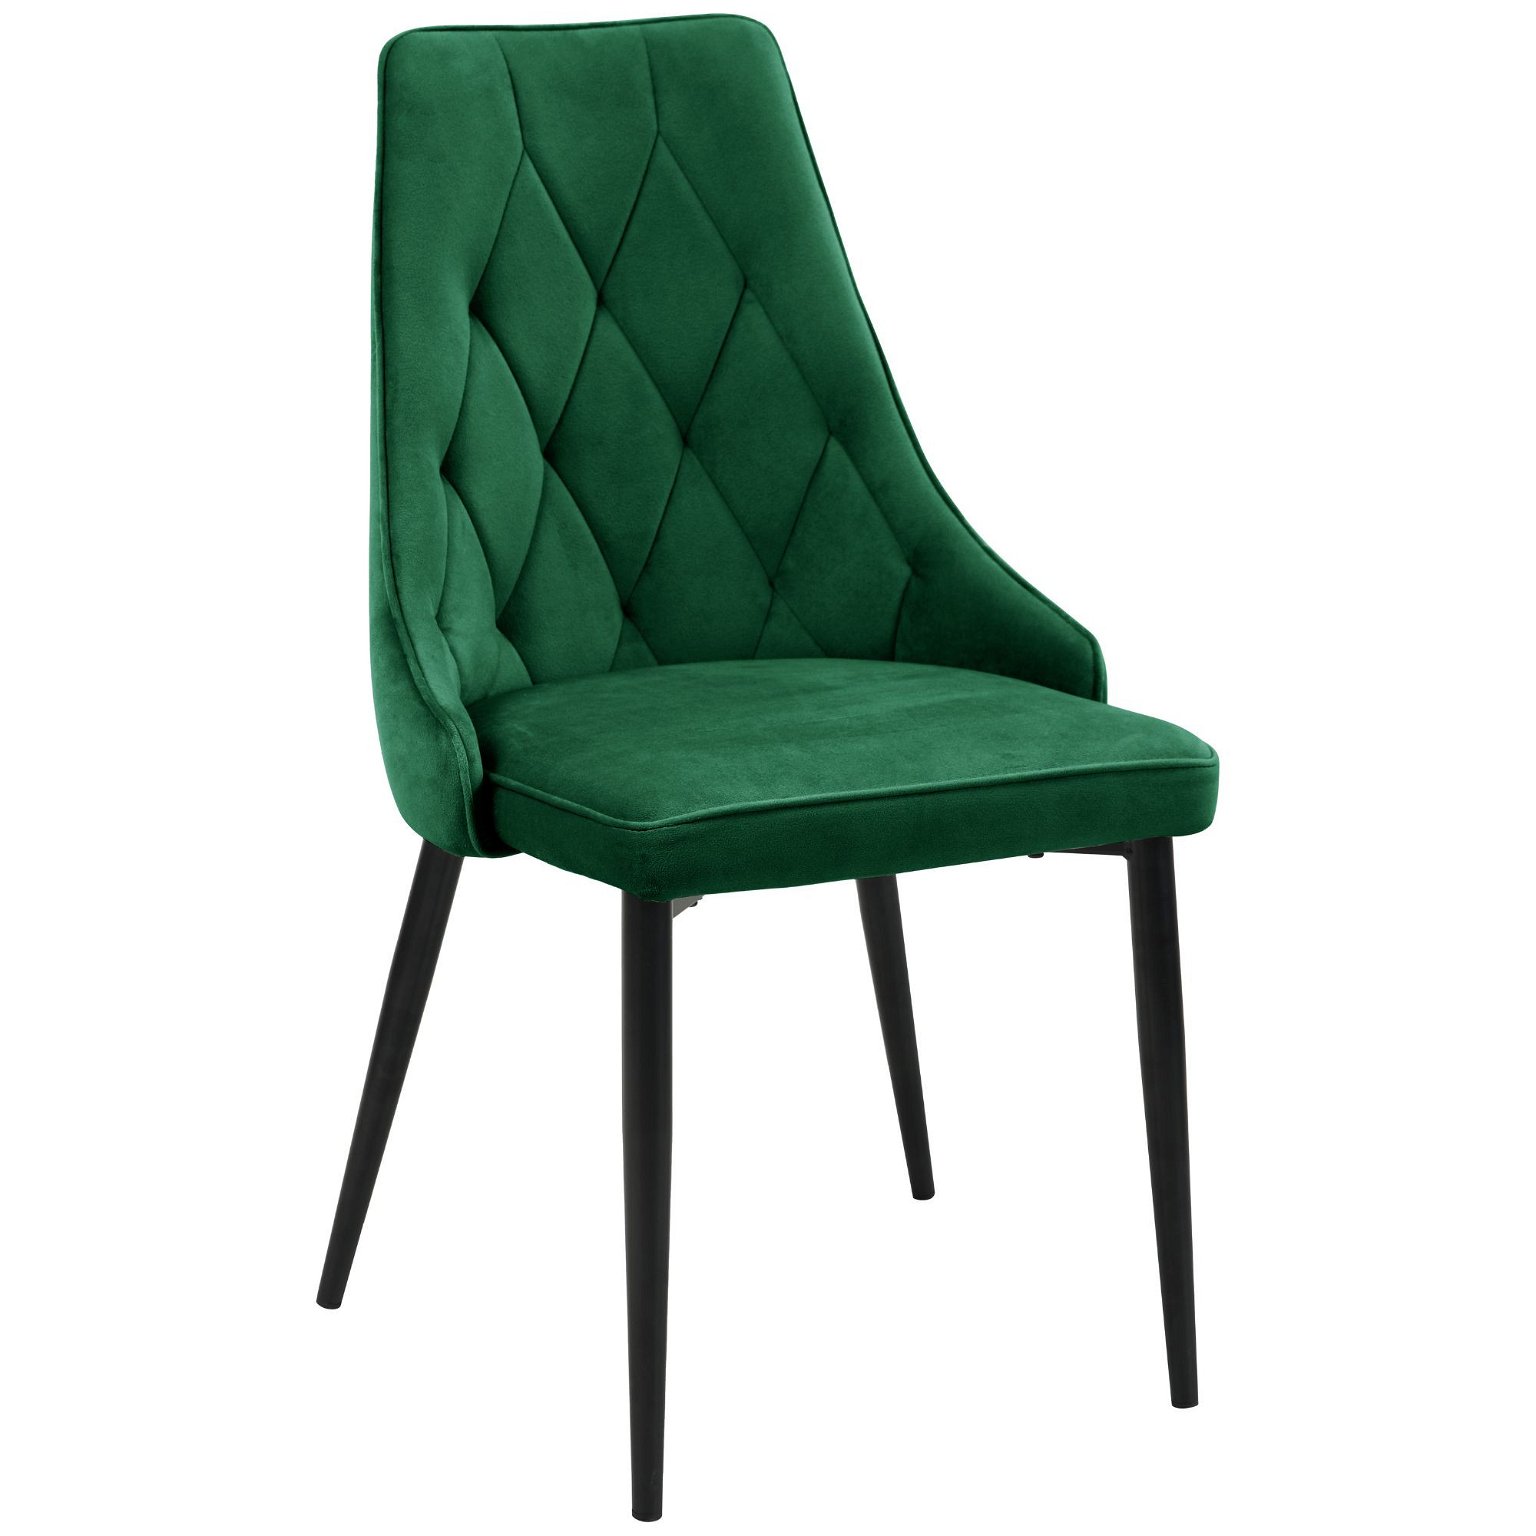 4-ių kėdžių komplektas SJ.054, žalia - 2